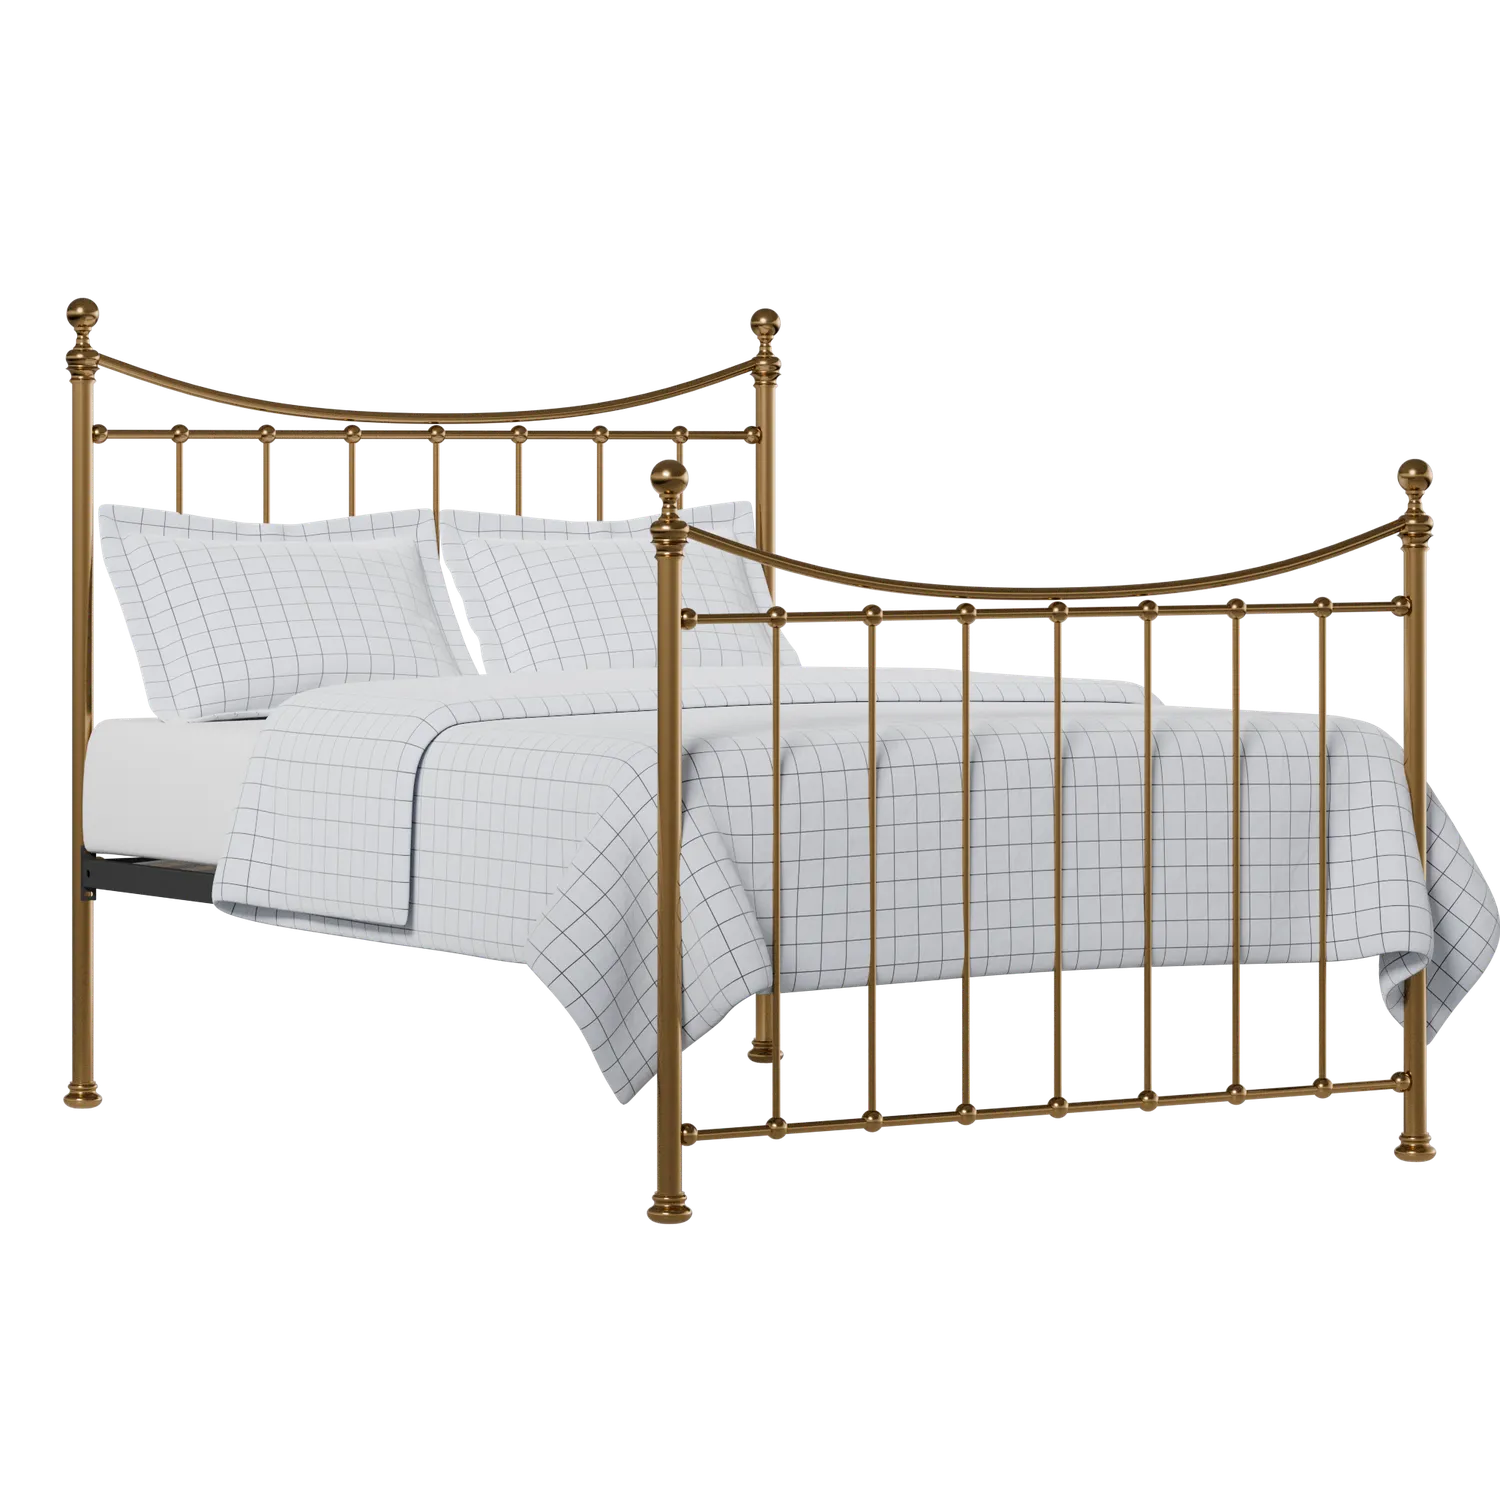 Kendal cama de latón con colchón